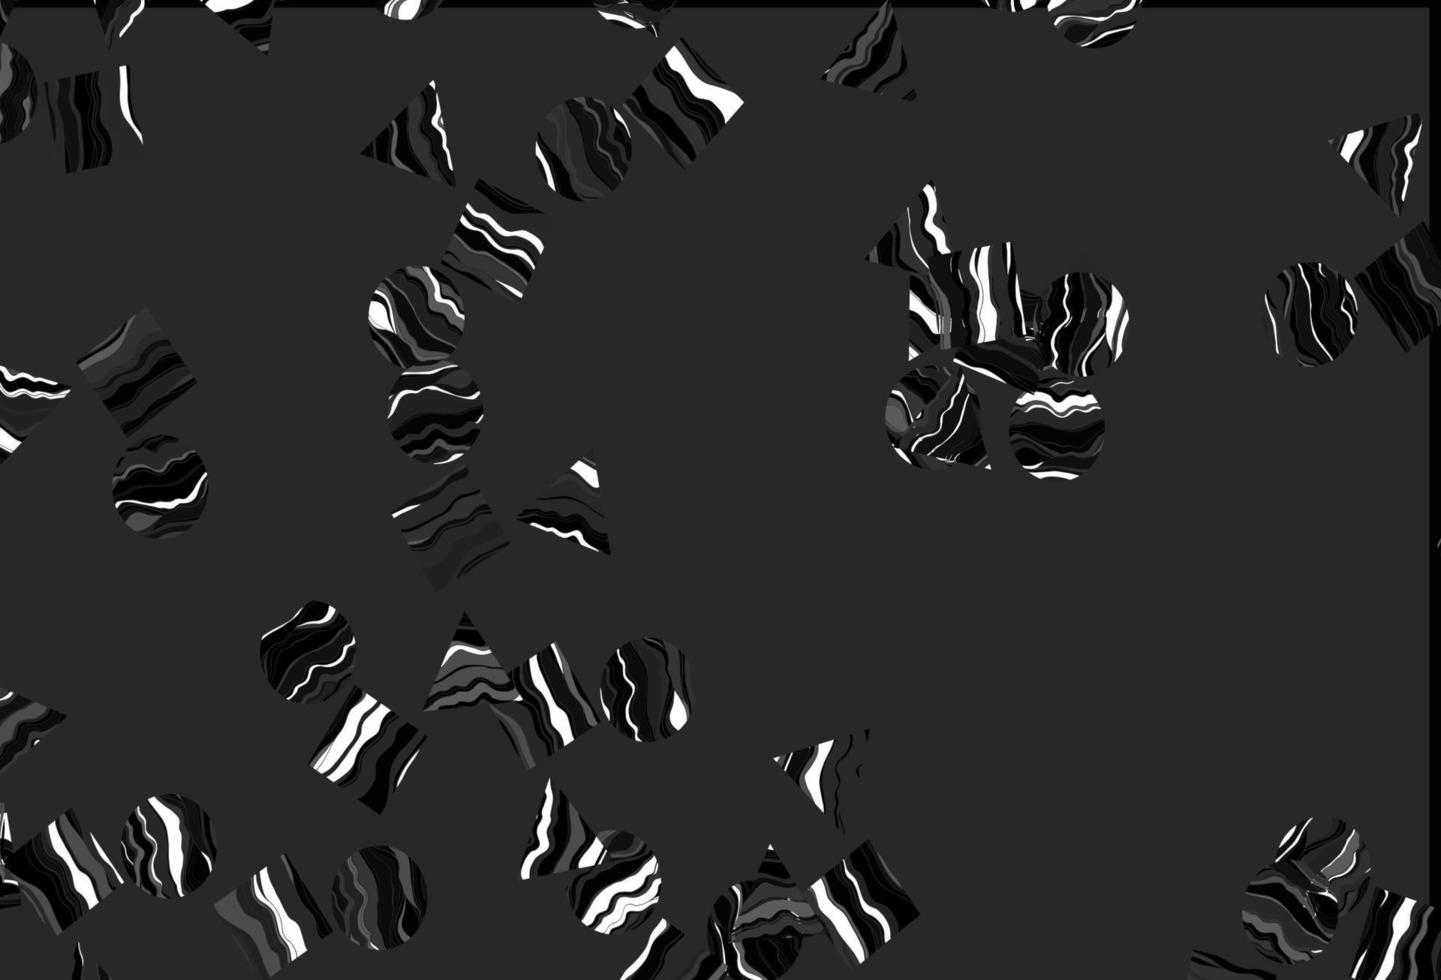 modèle vectoriel noir clair avec cristaux, cercles, carrés.